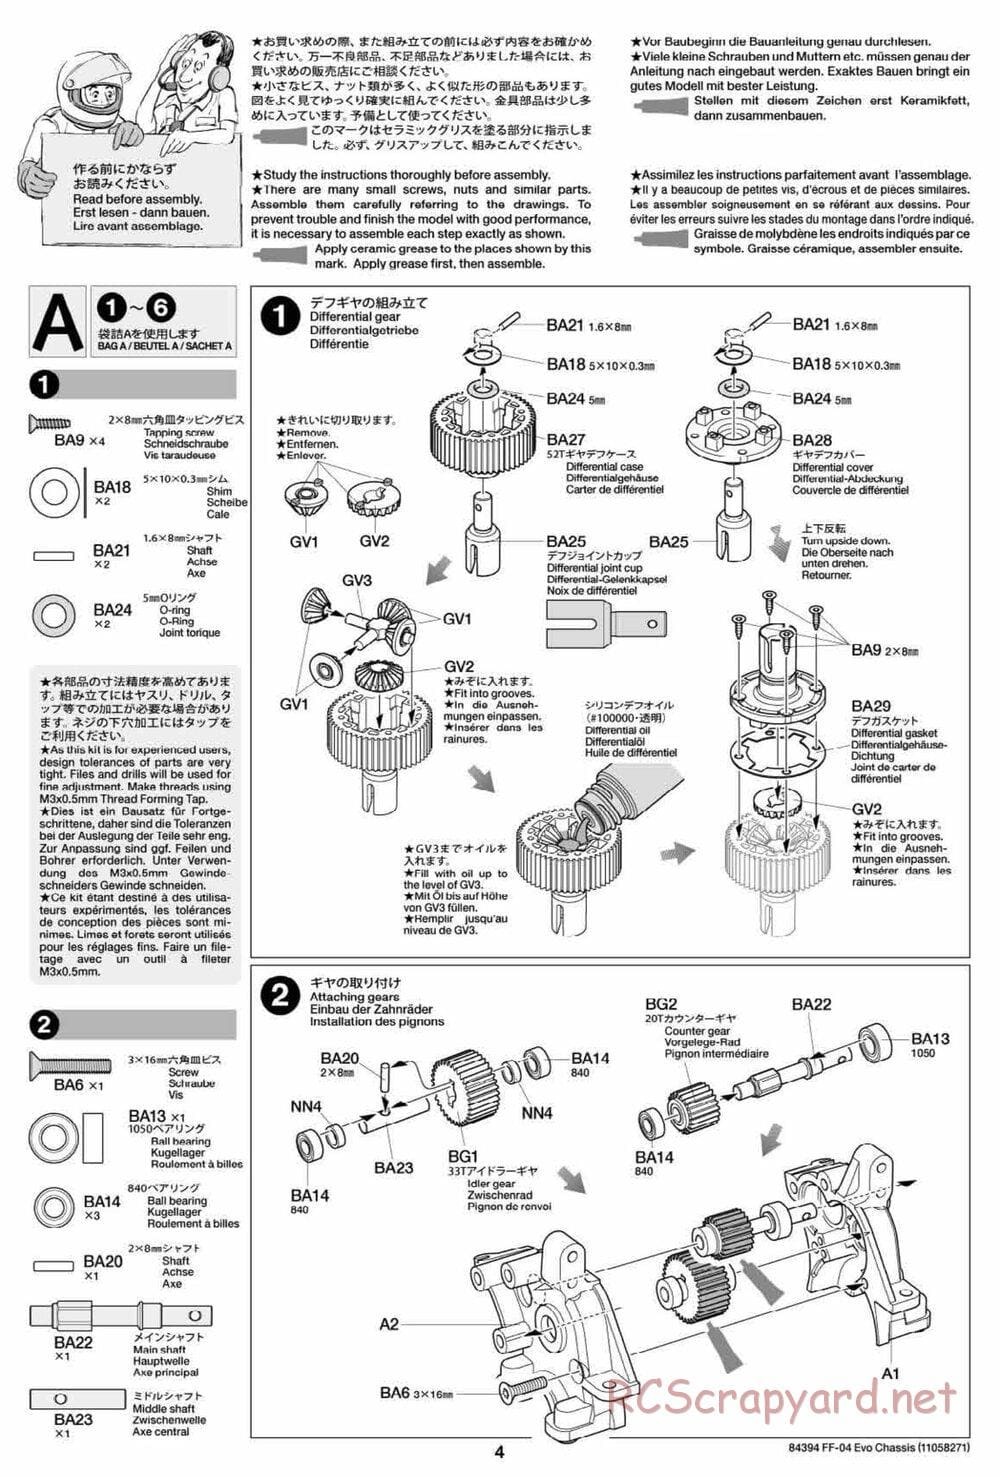 Tamiya - FF-04 Evo Chassis - Manual - Page 4